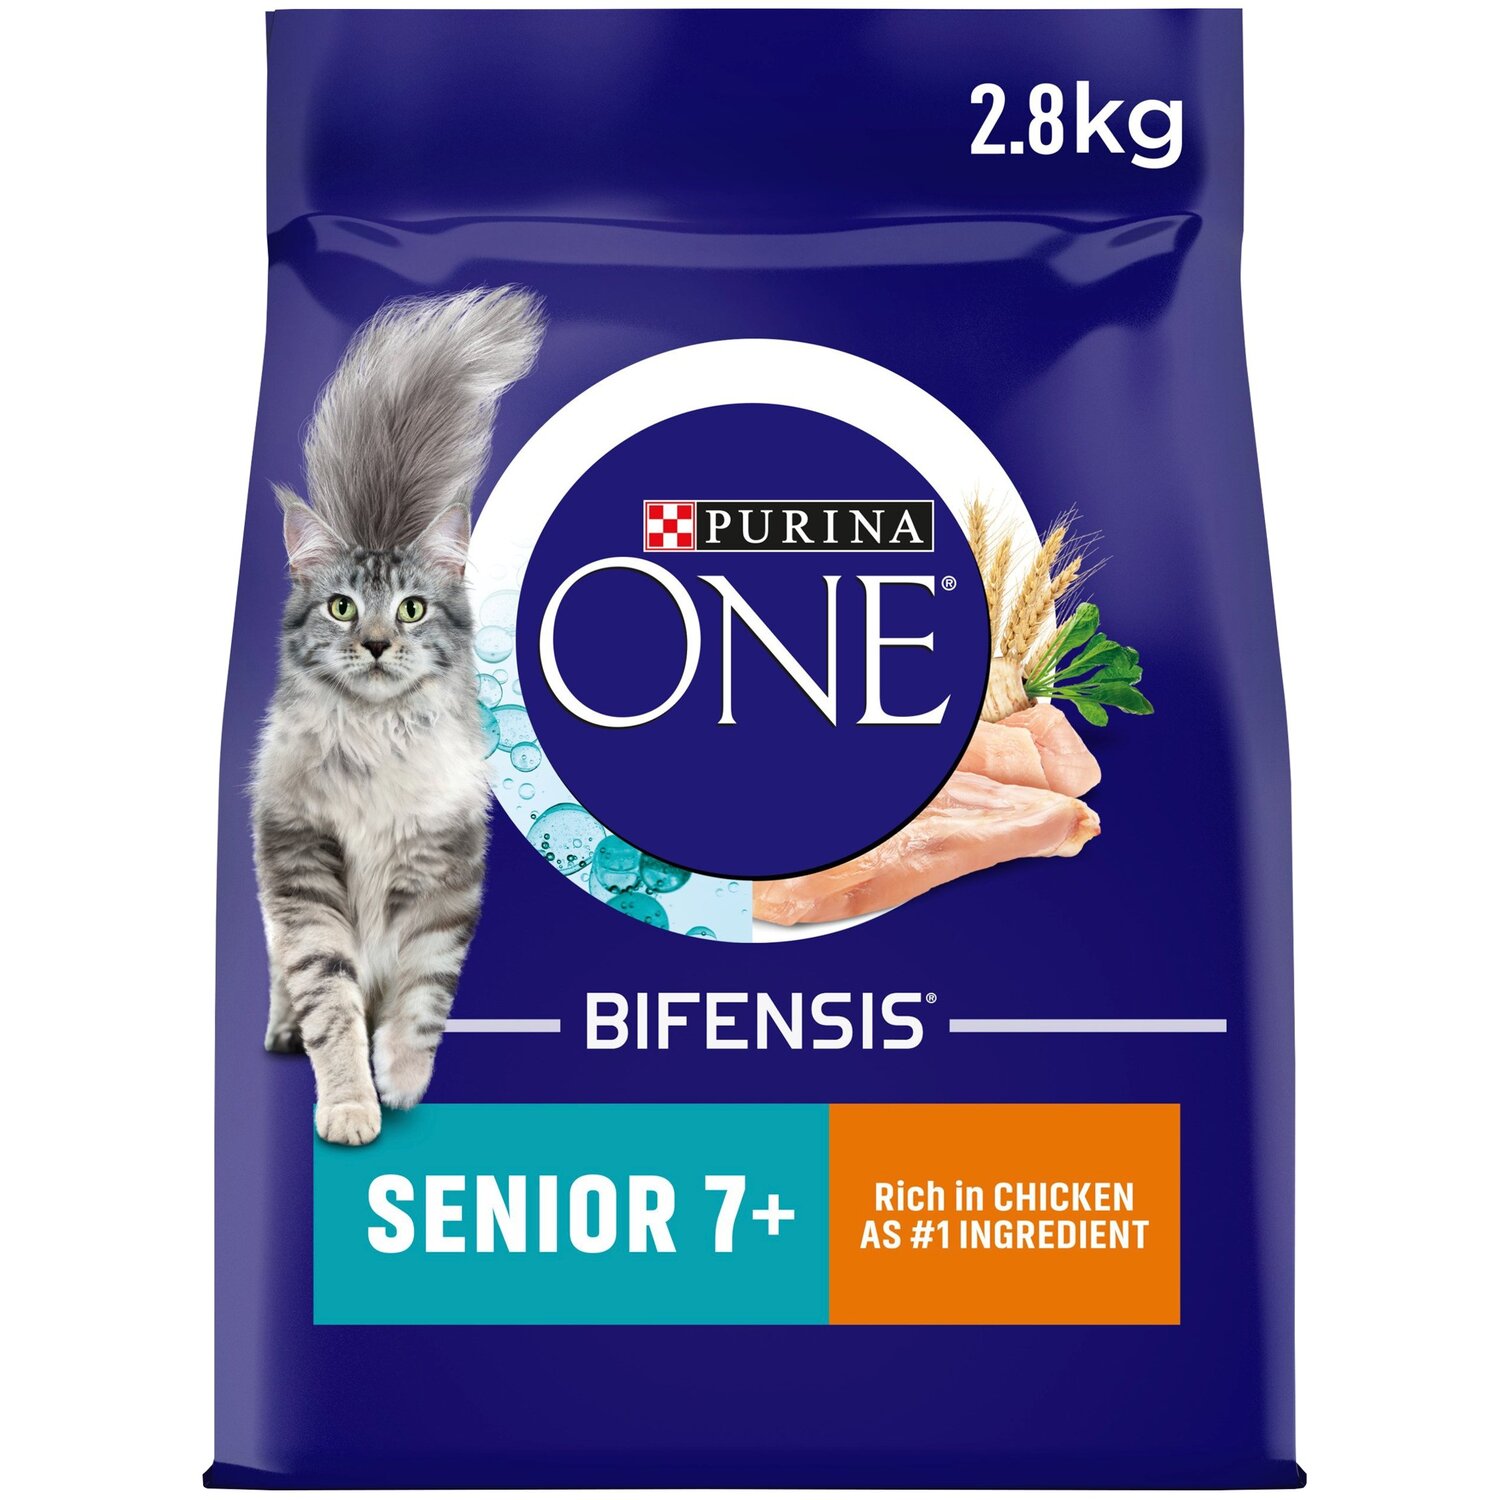 Purina One Bifensis Rich in Chicken Senior Dry Cat Food 2.8kg Image 1